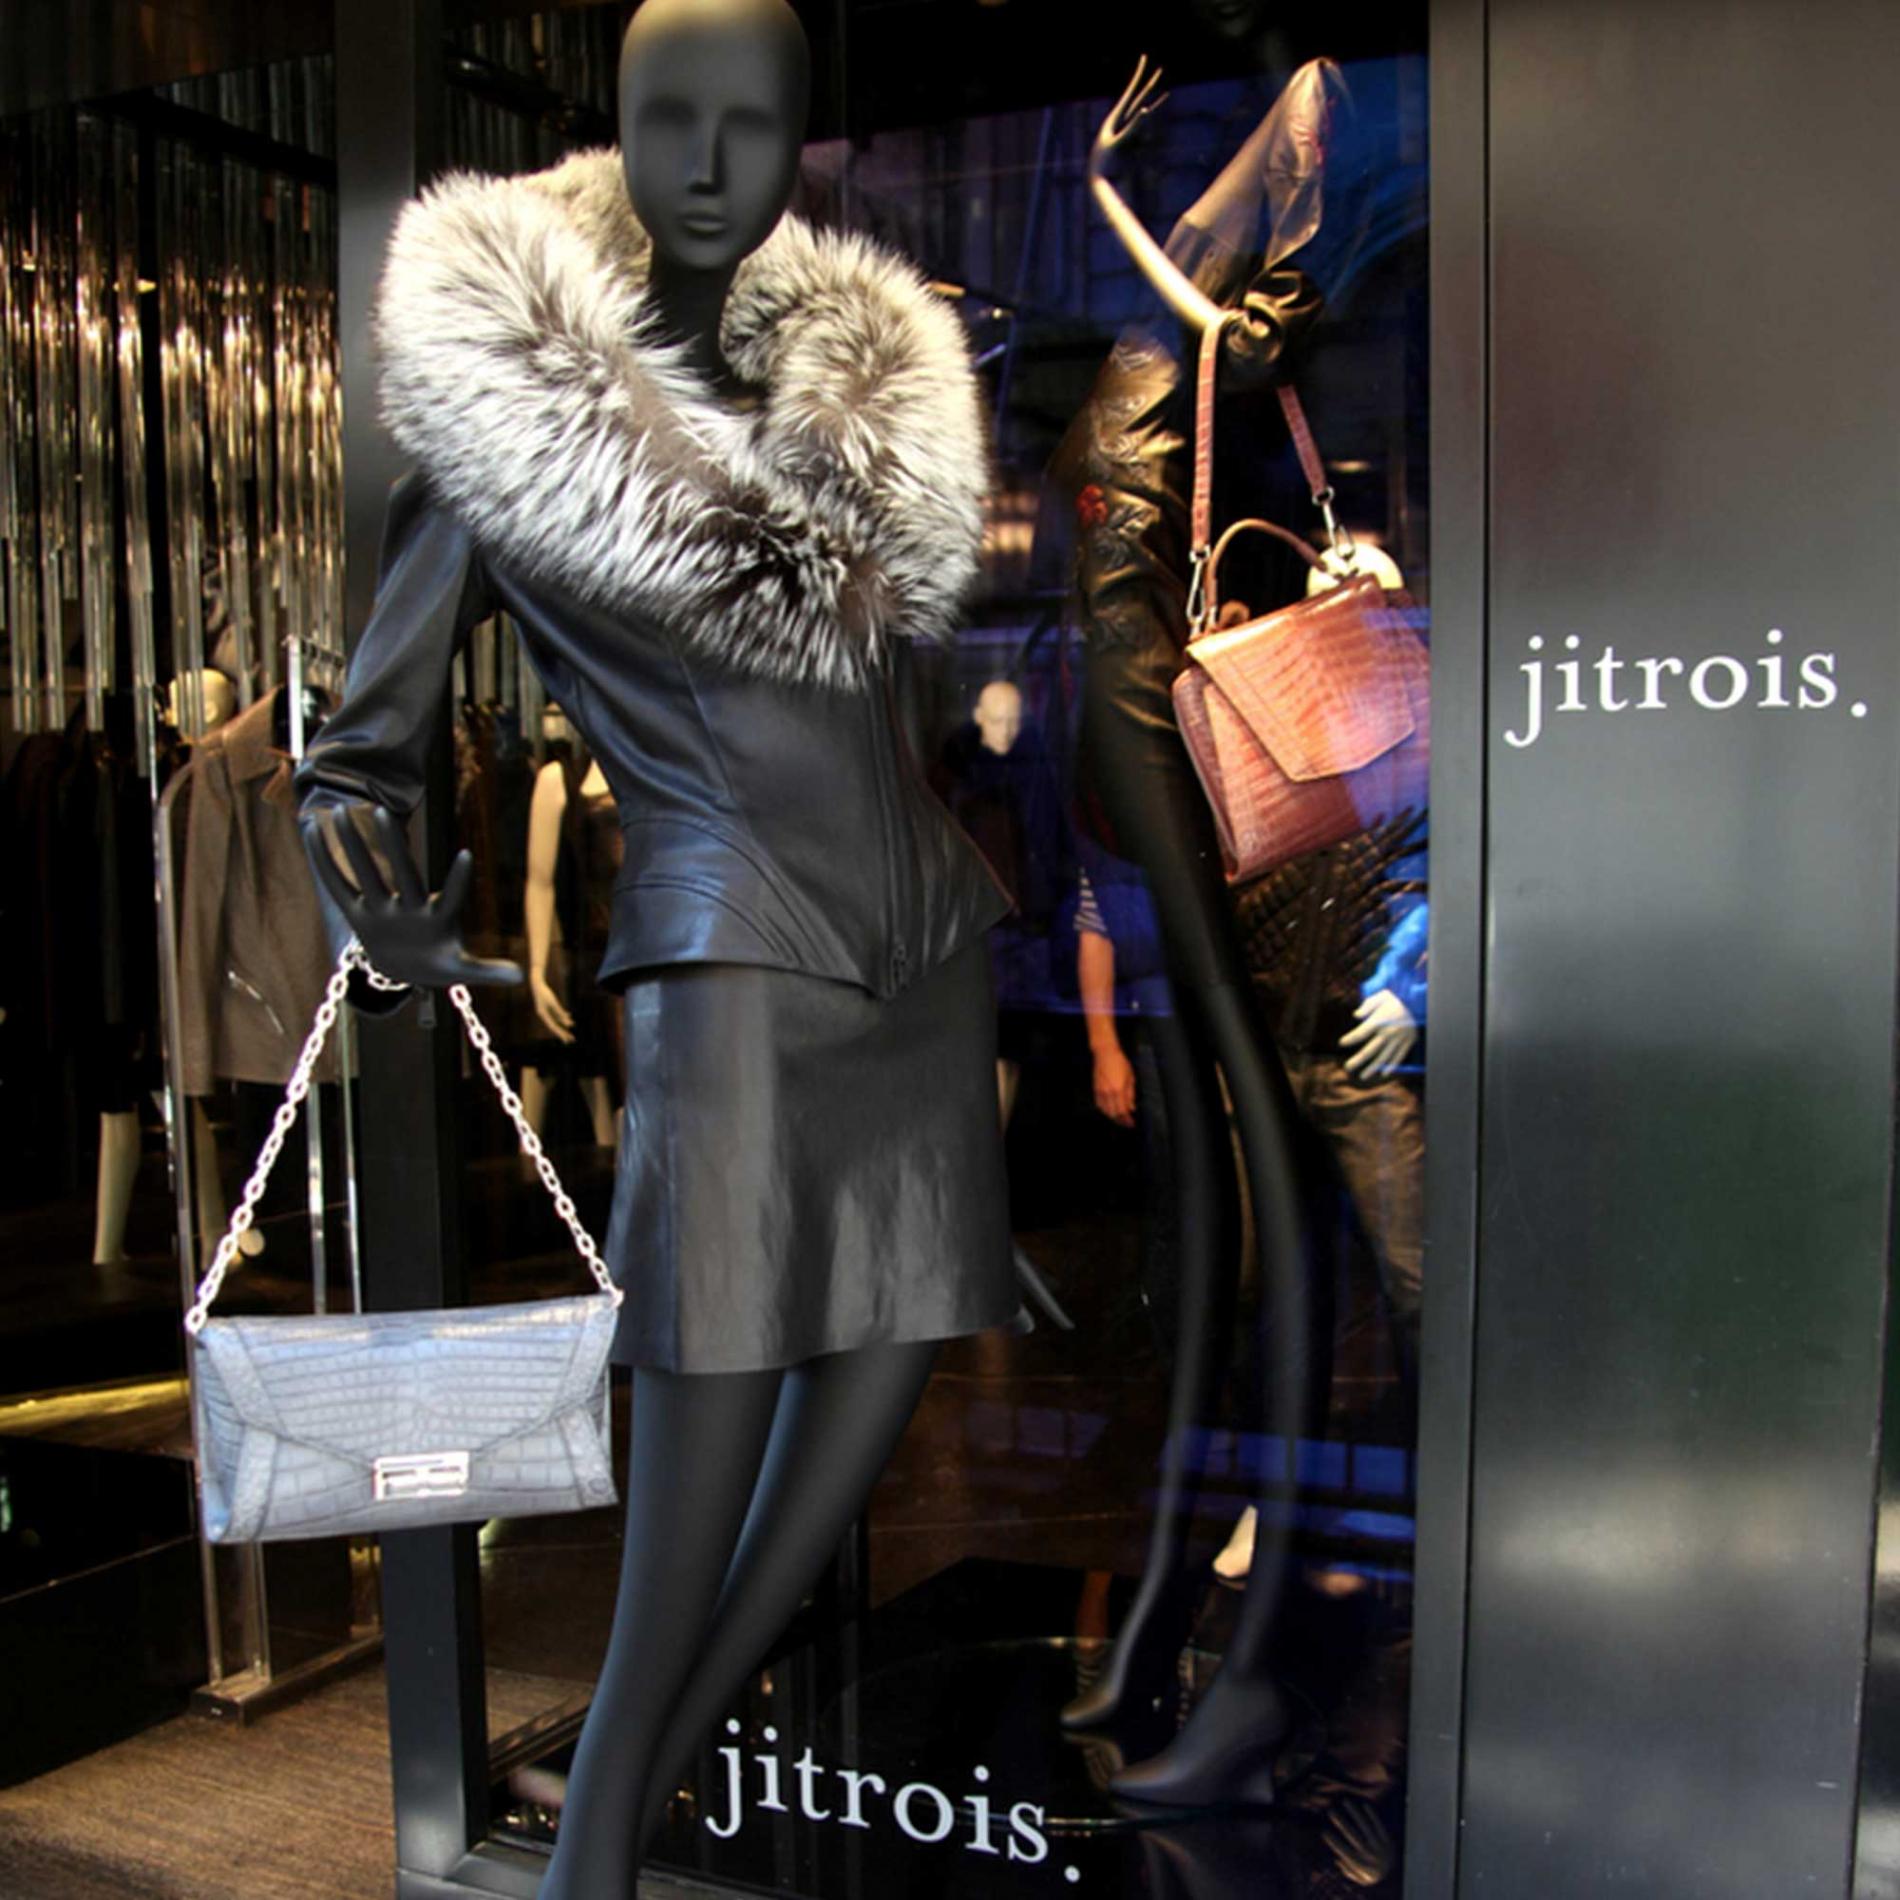 Shop Jitrois Paris, located at 38 faubourg saint honoré 75008 Paris | Jitrois